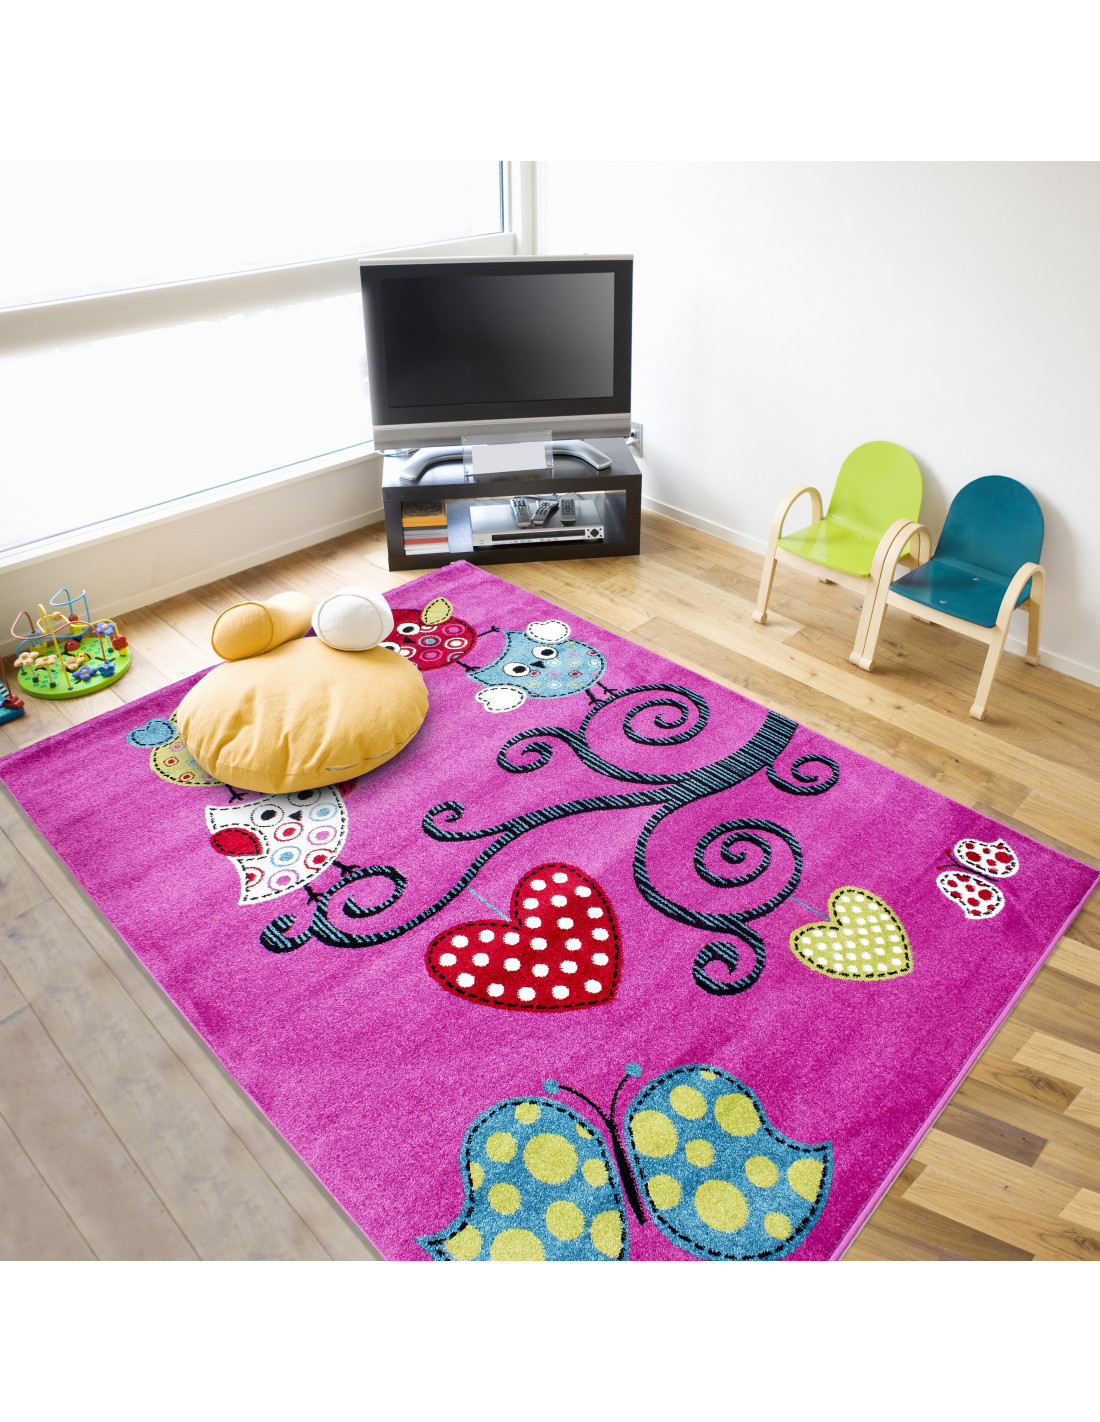 Kinderteppich Kinderzimmer Teppich mit motiven Baum Schmetterling Kids 0420 Lila